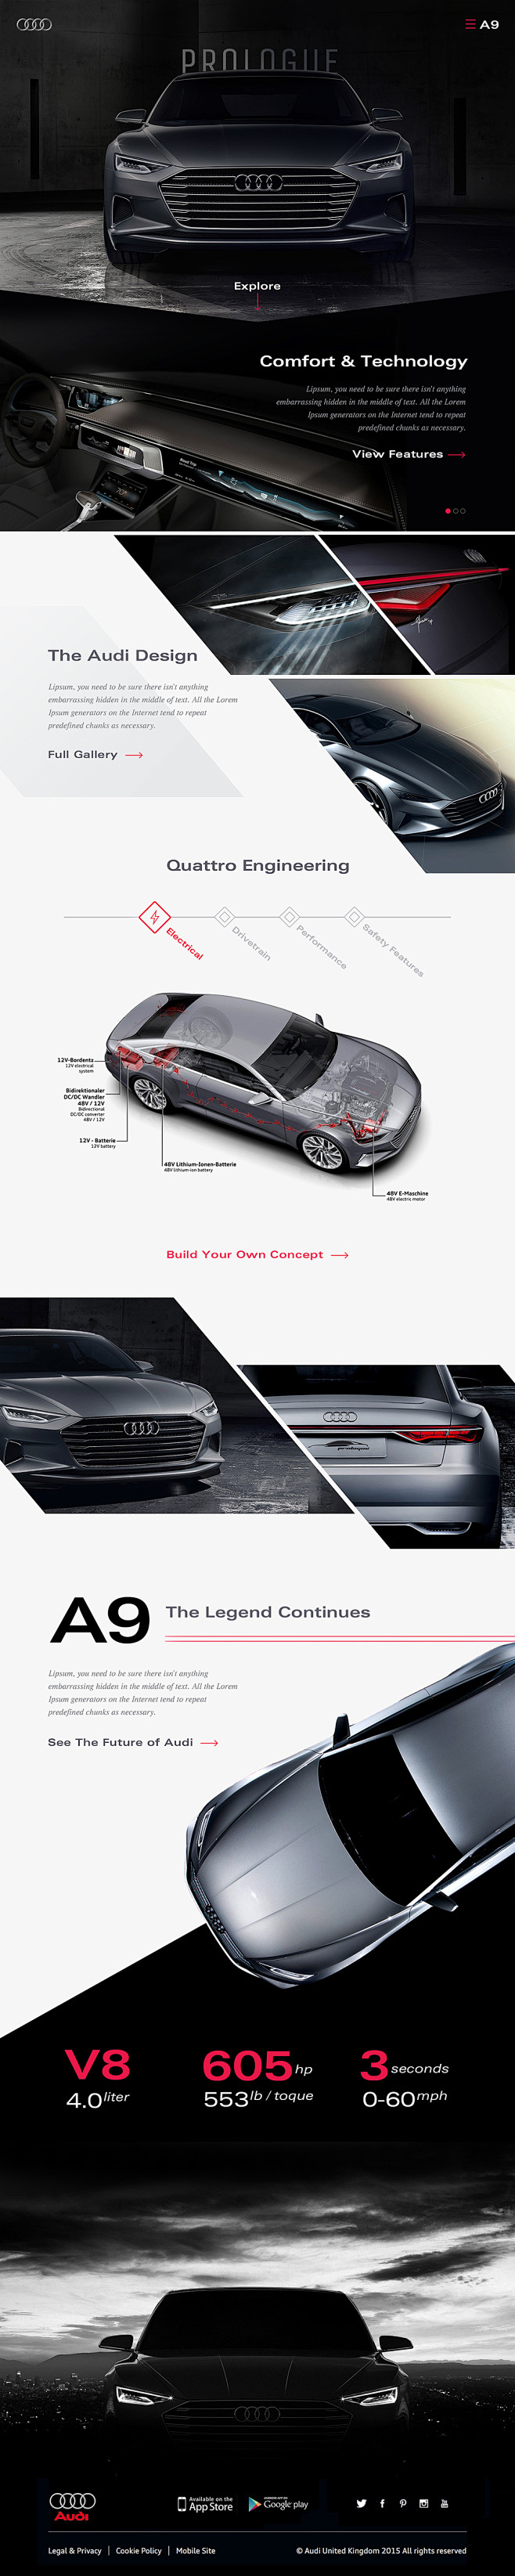 Audi Prologue / A9 C...